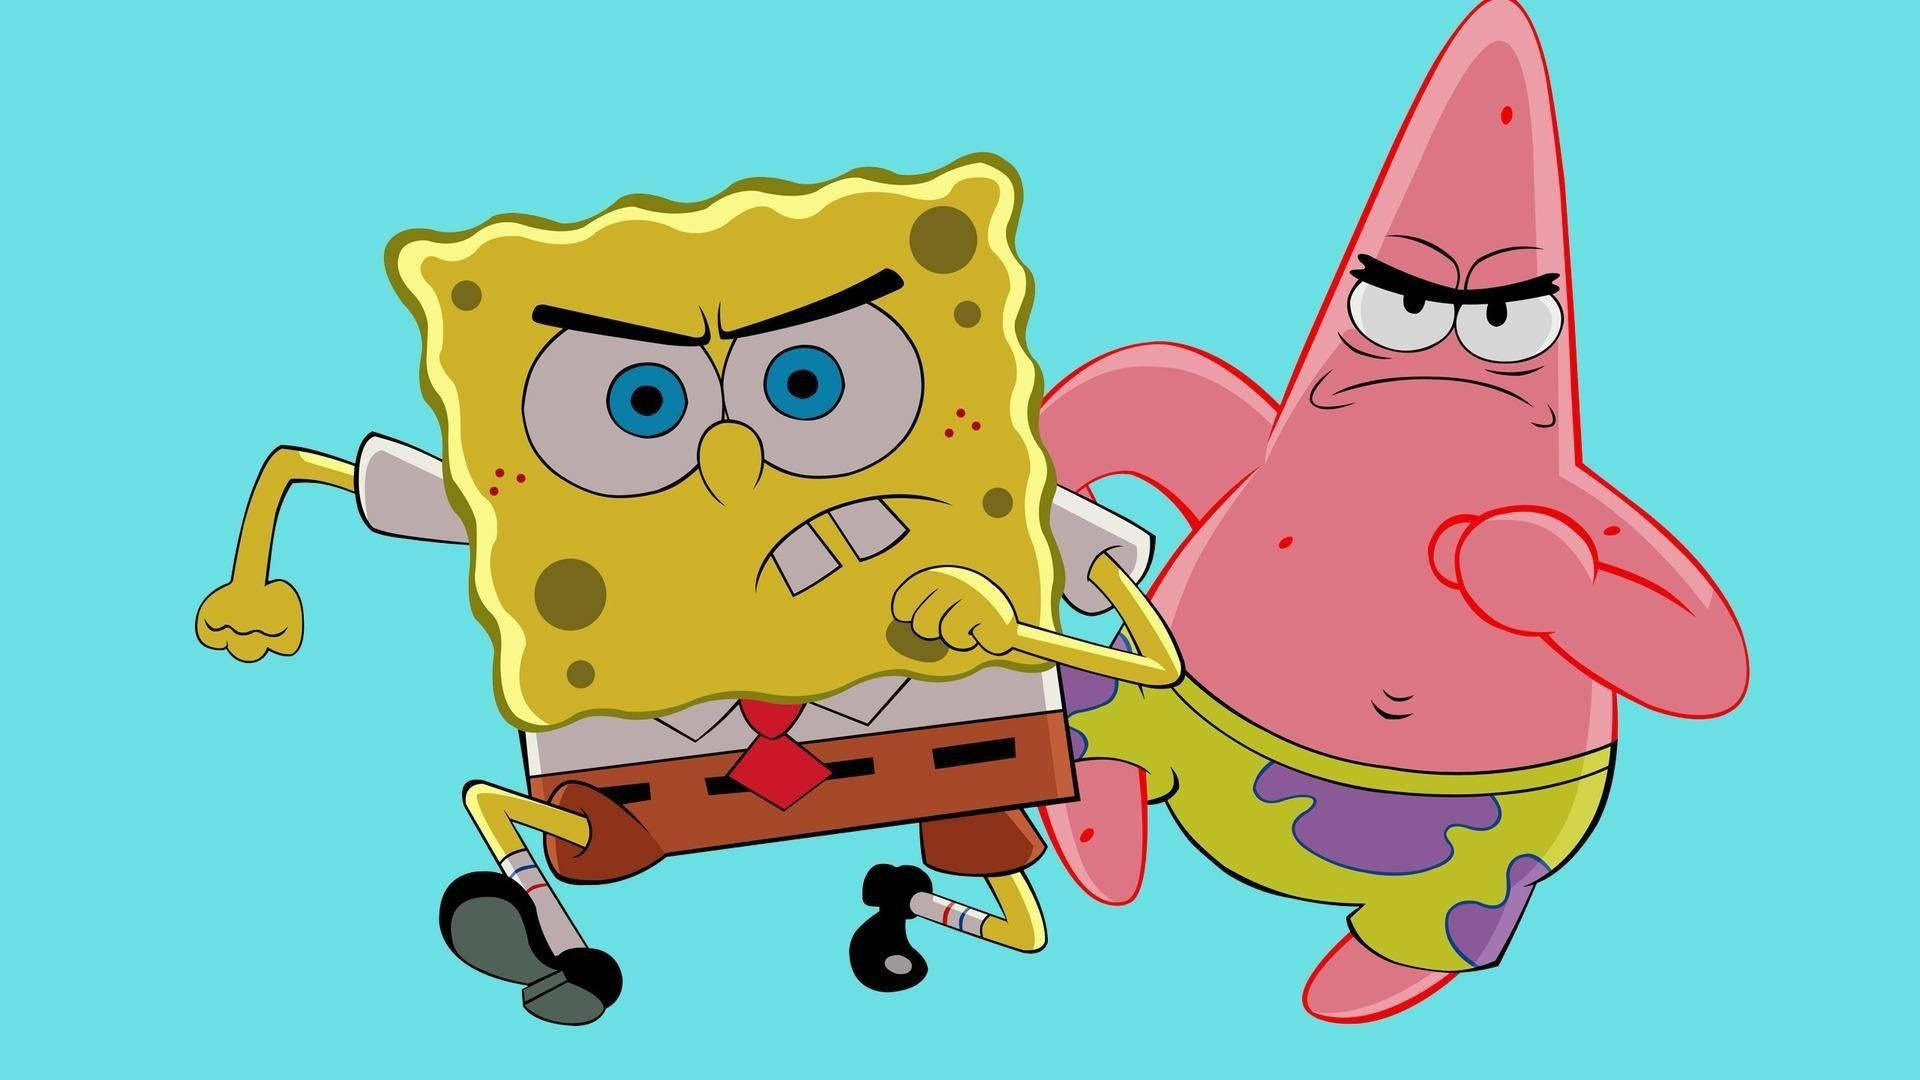 SpongeBob SquarePants And Patrick